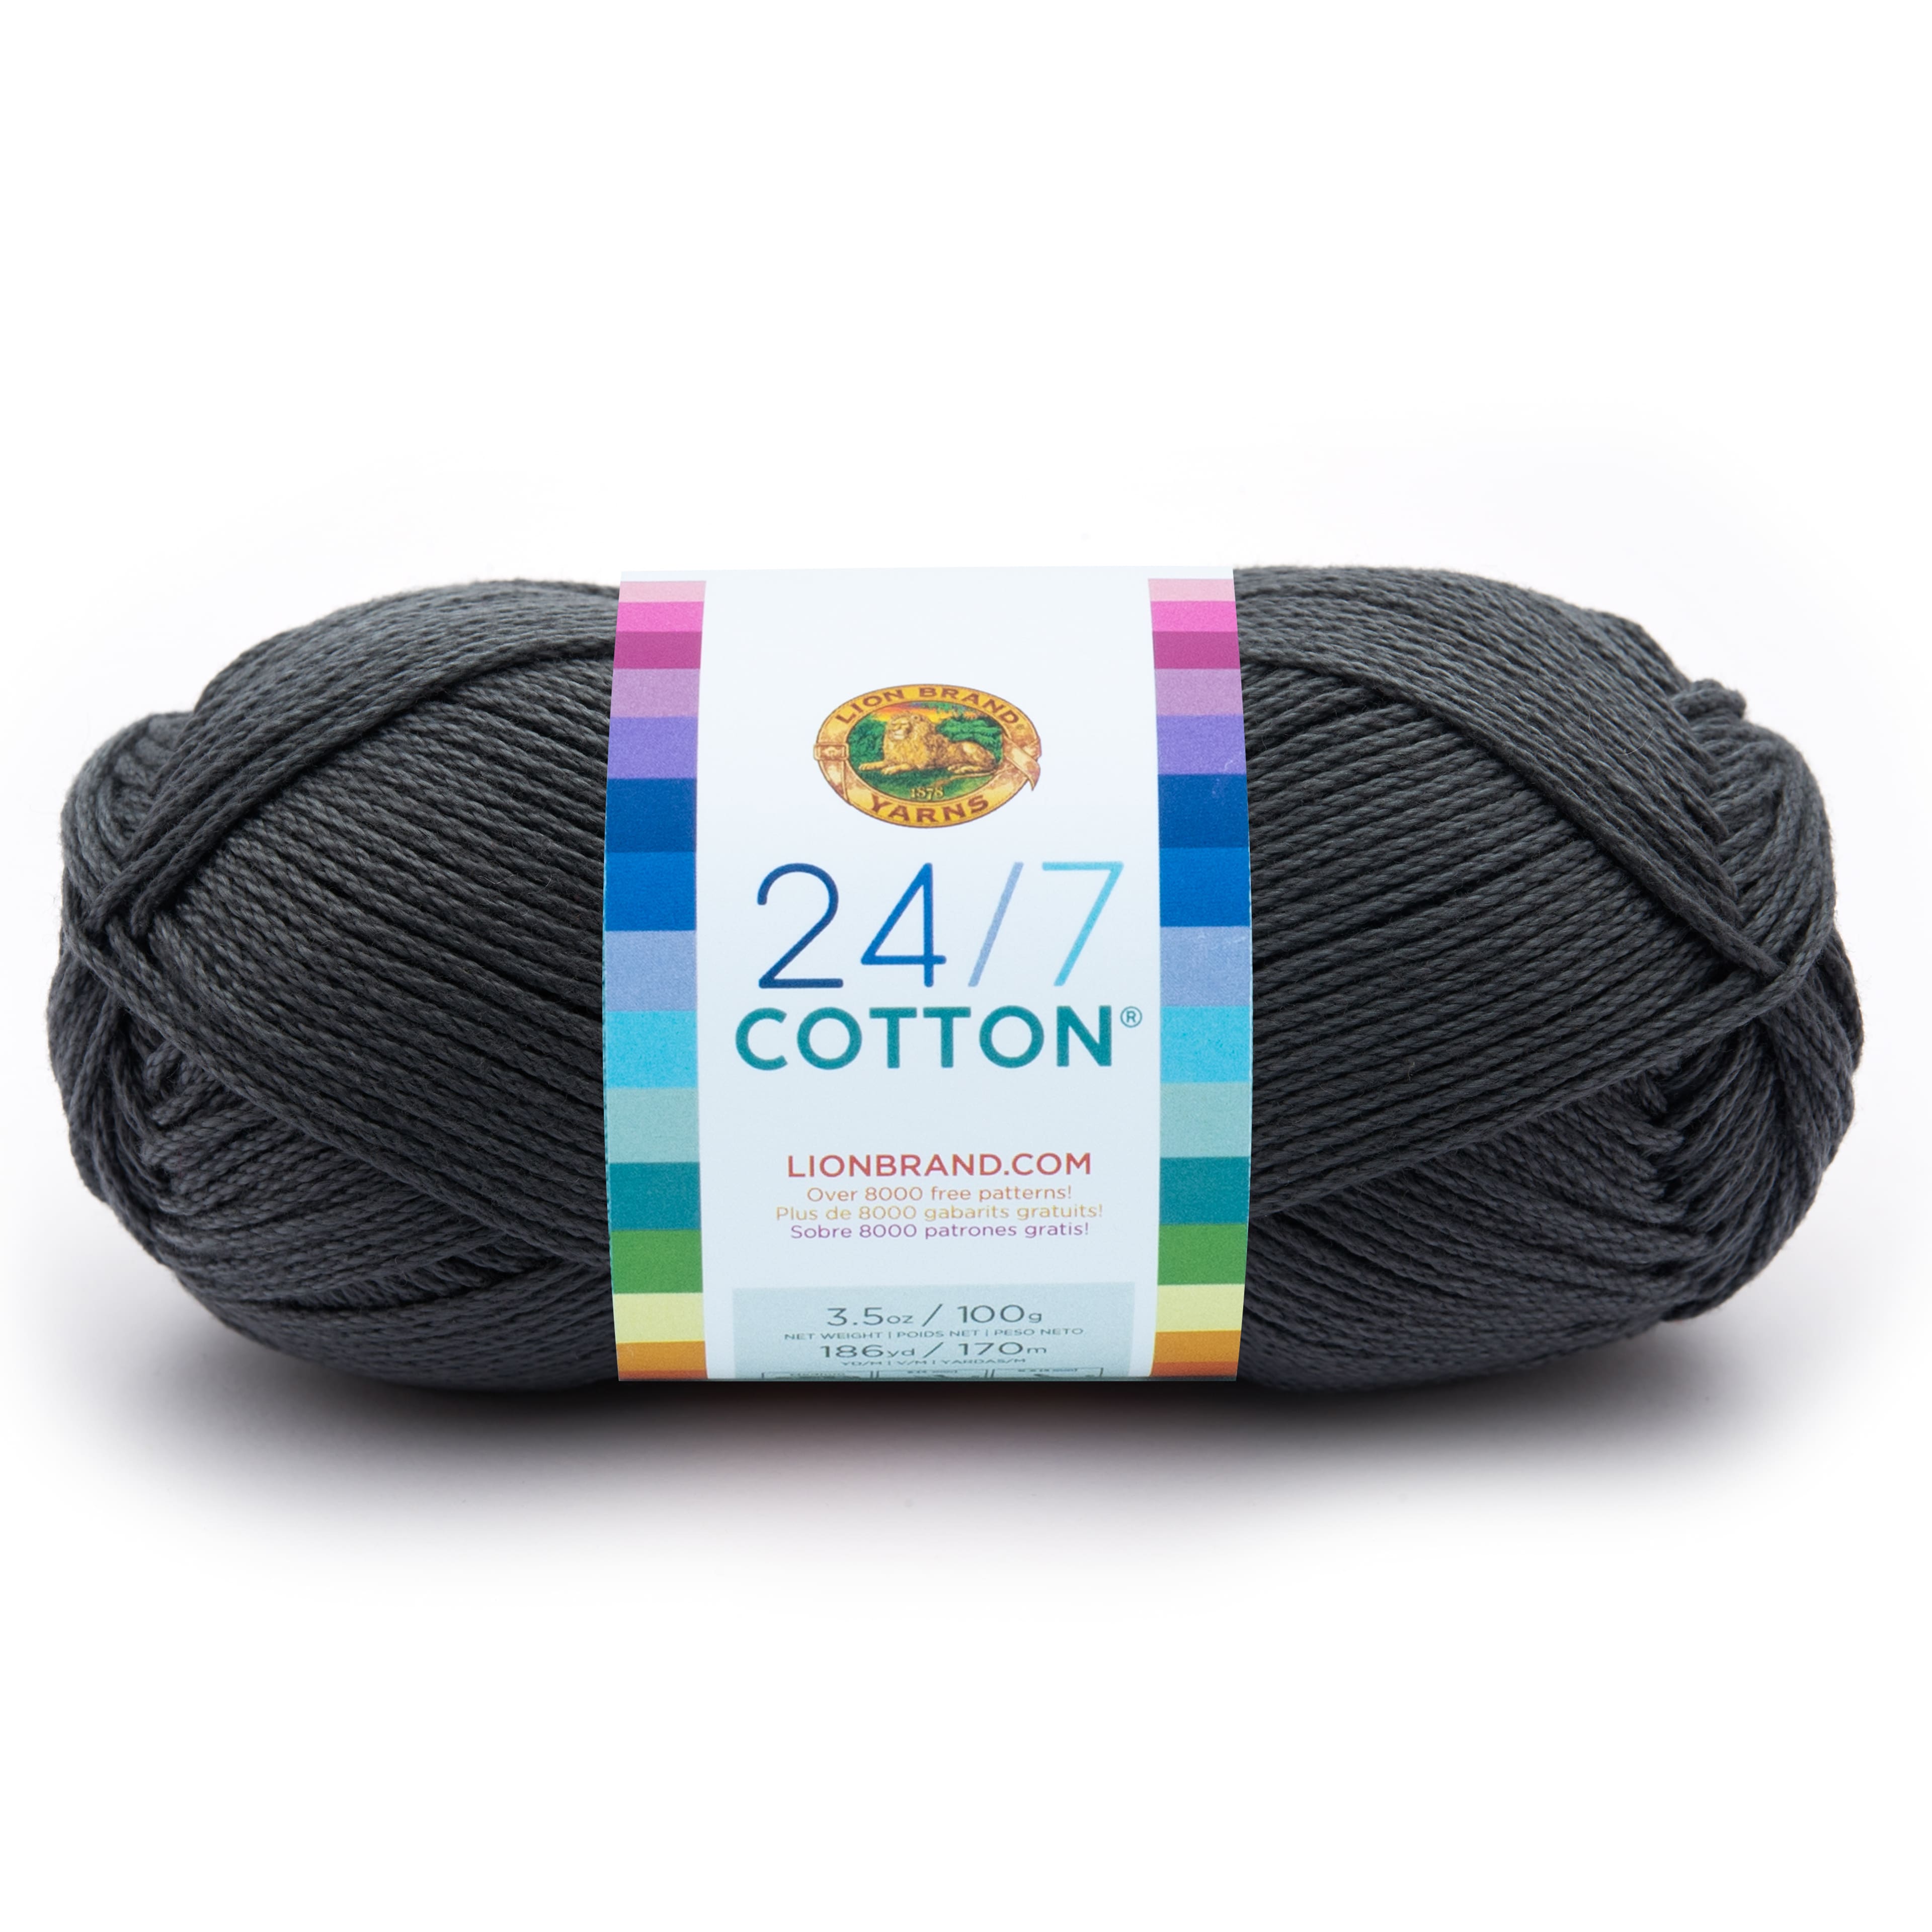 3 ct Lion Brand Stitch Soak Scrub Yarn in Blue Indigo | 1.4 | Michaels